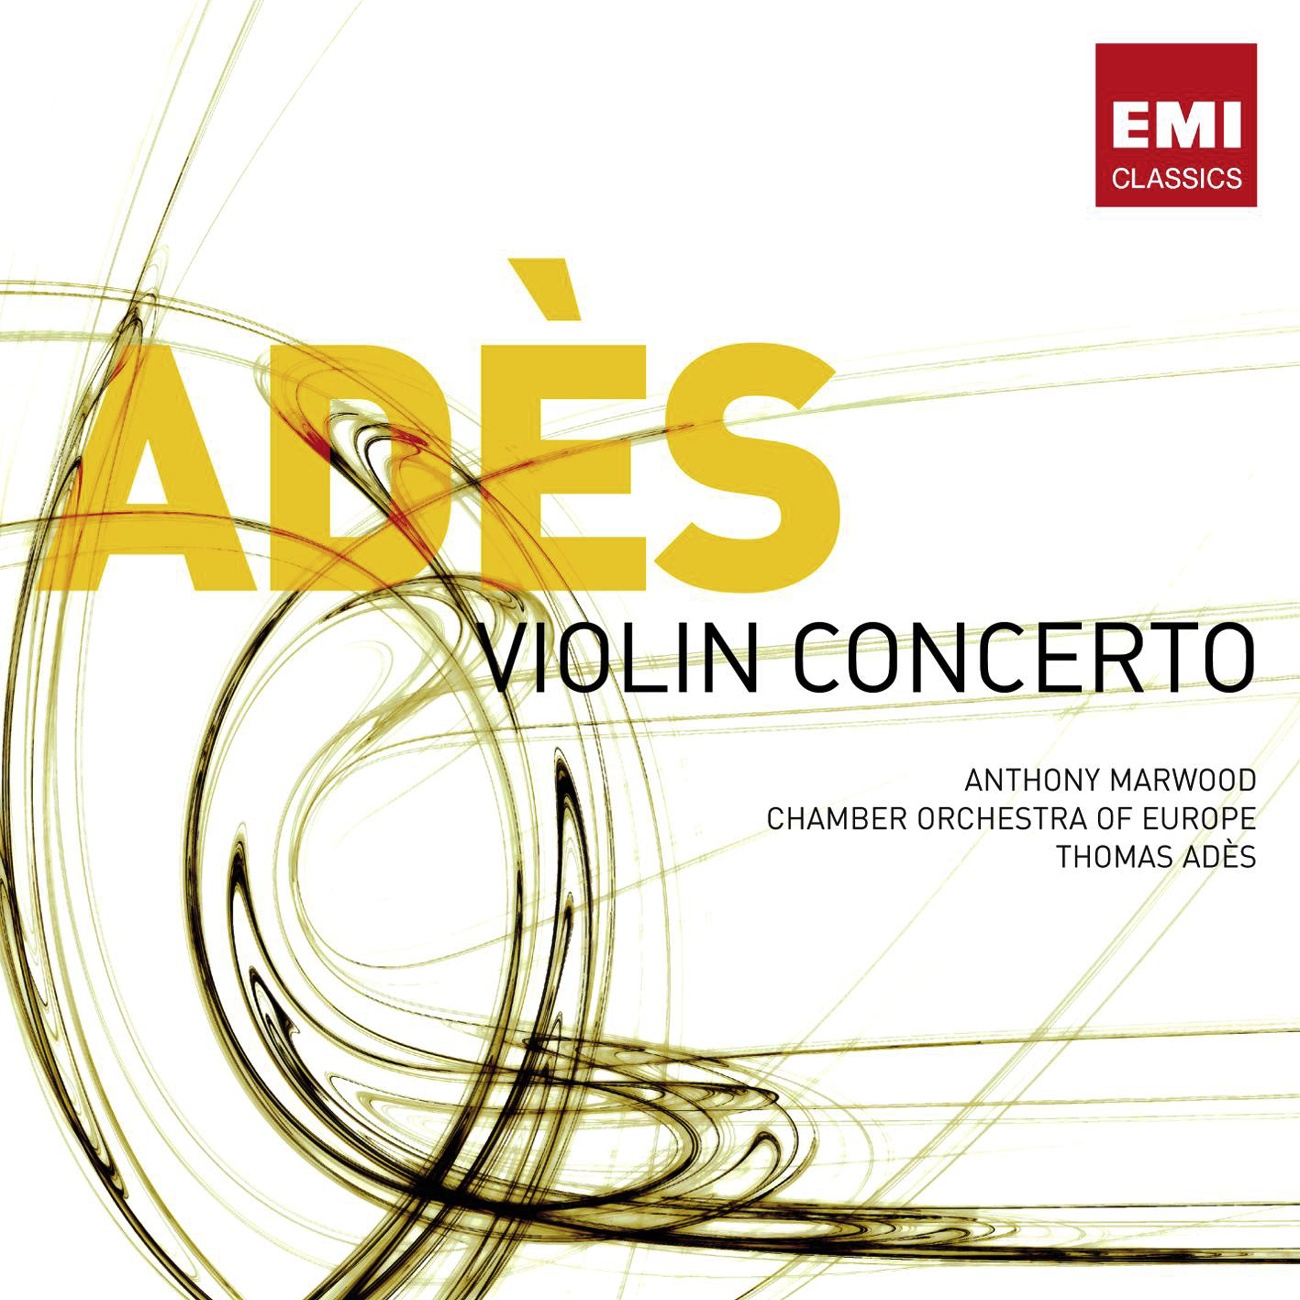 Violin Concerto: Paths